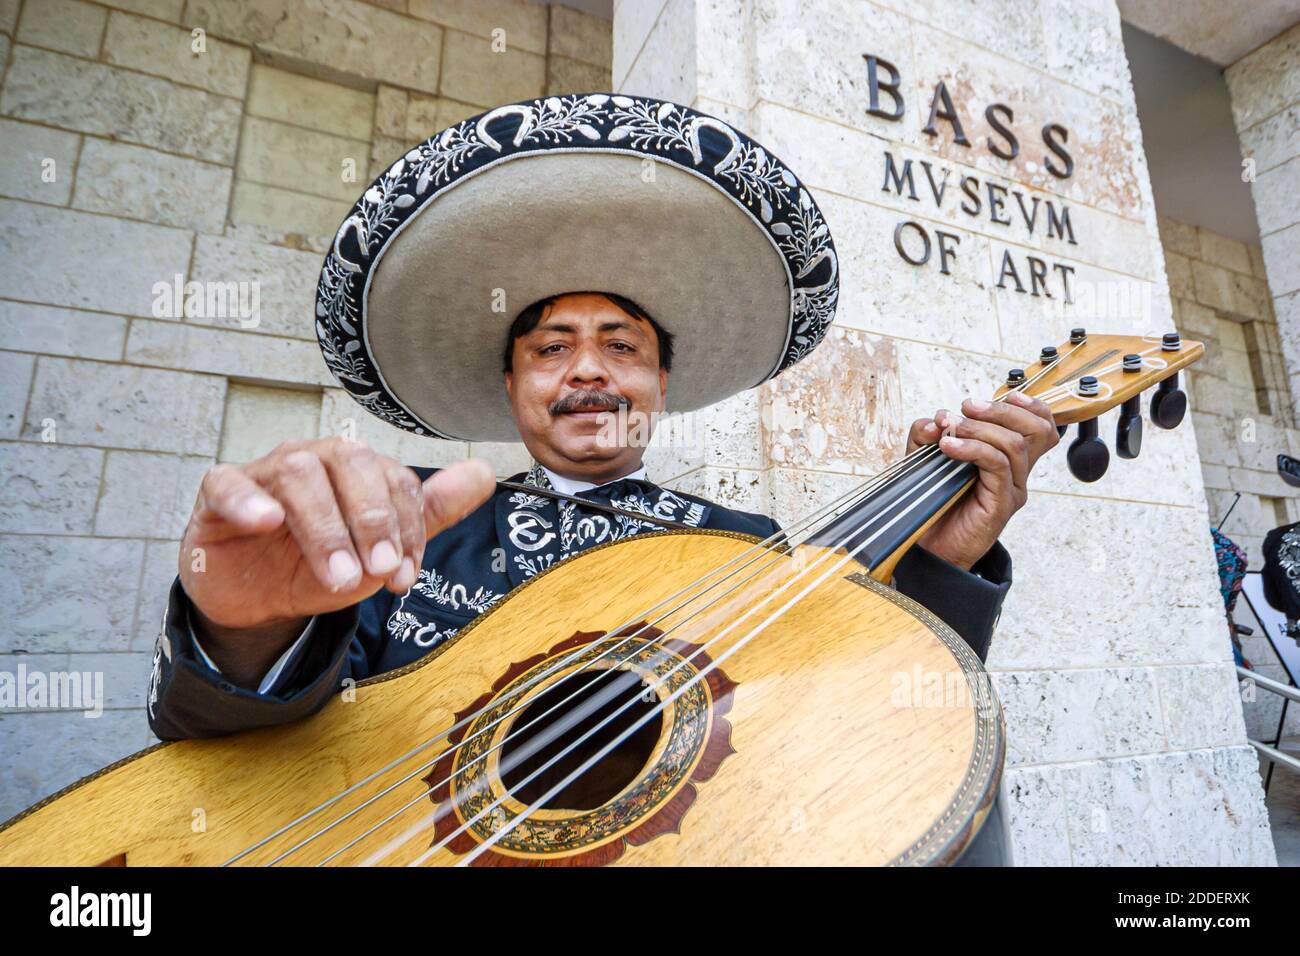 Miami Beach Florida,Collins Park Mexico Cinco de Mayo celebration,mariachi musician guitar Hispanic man outfit sombrero, Stock Photo